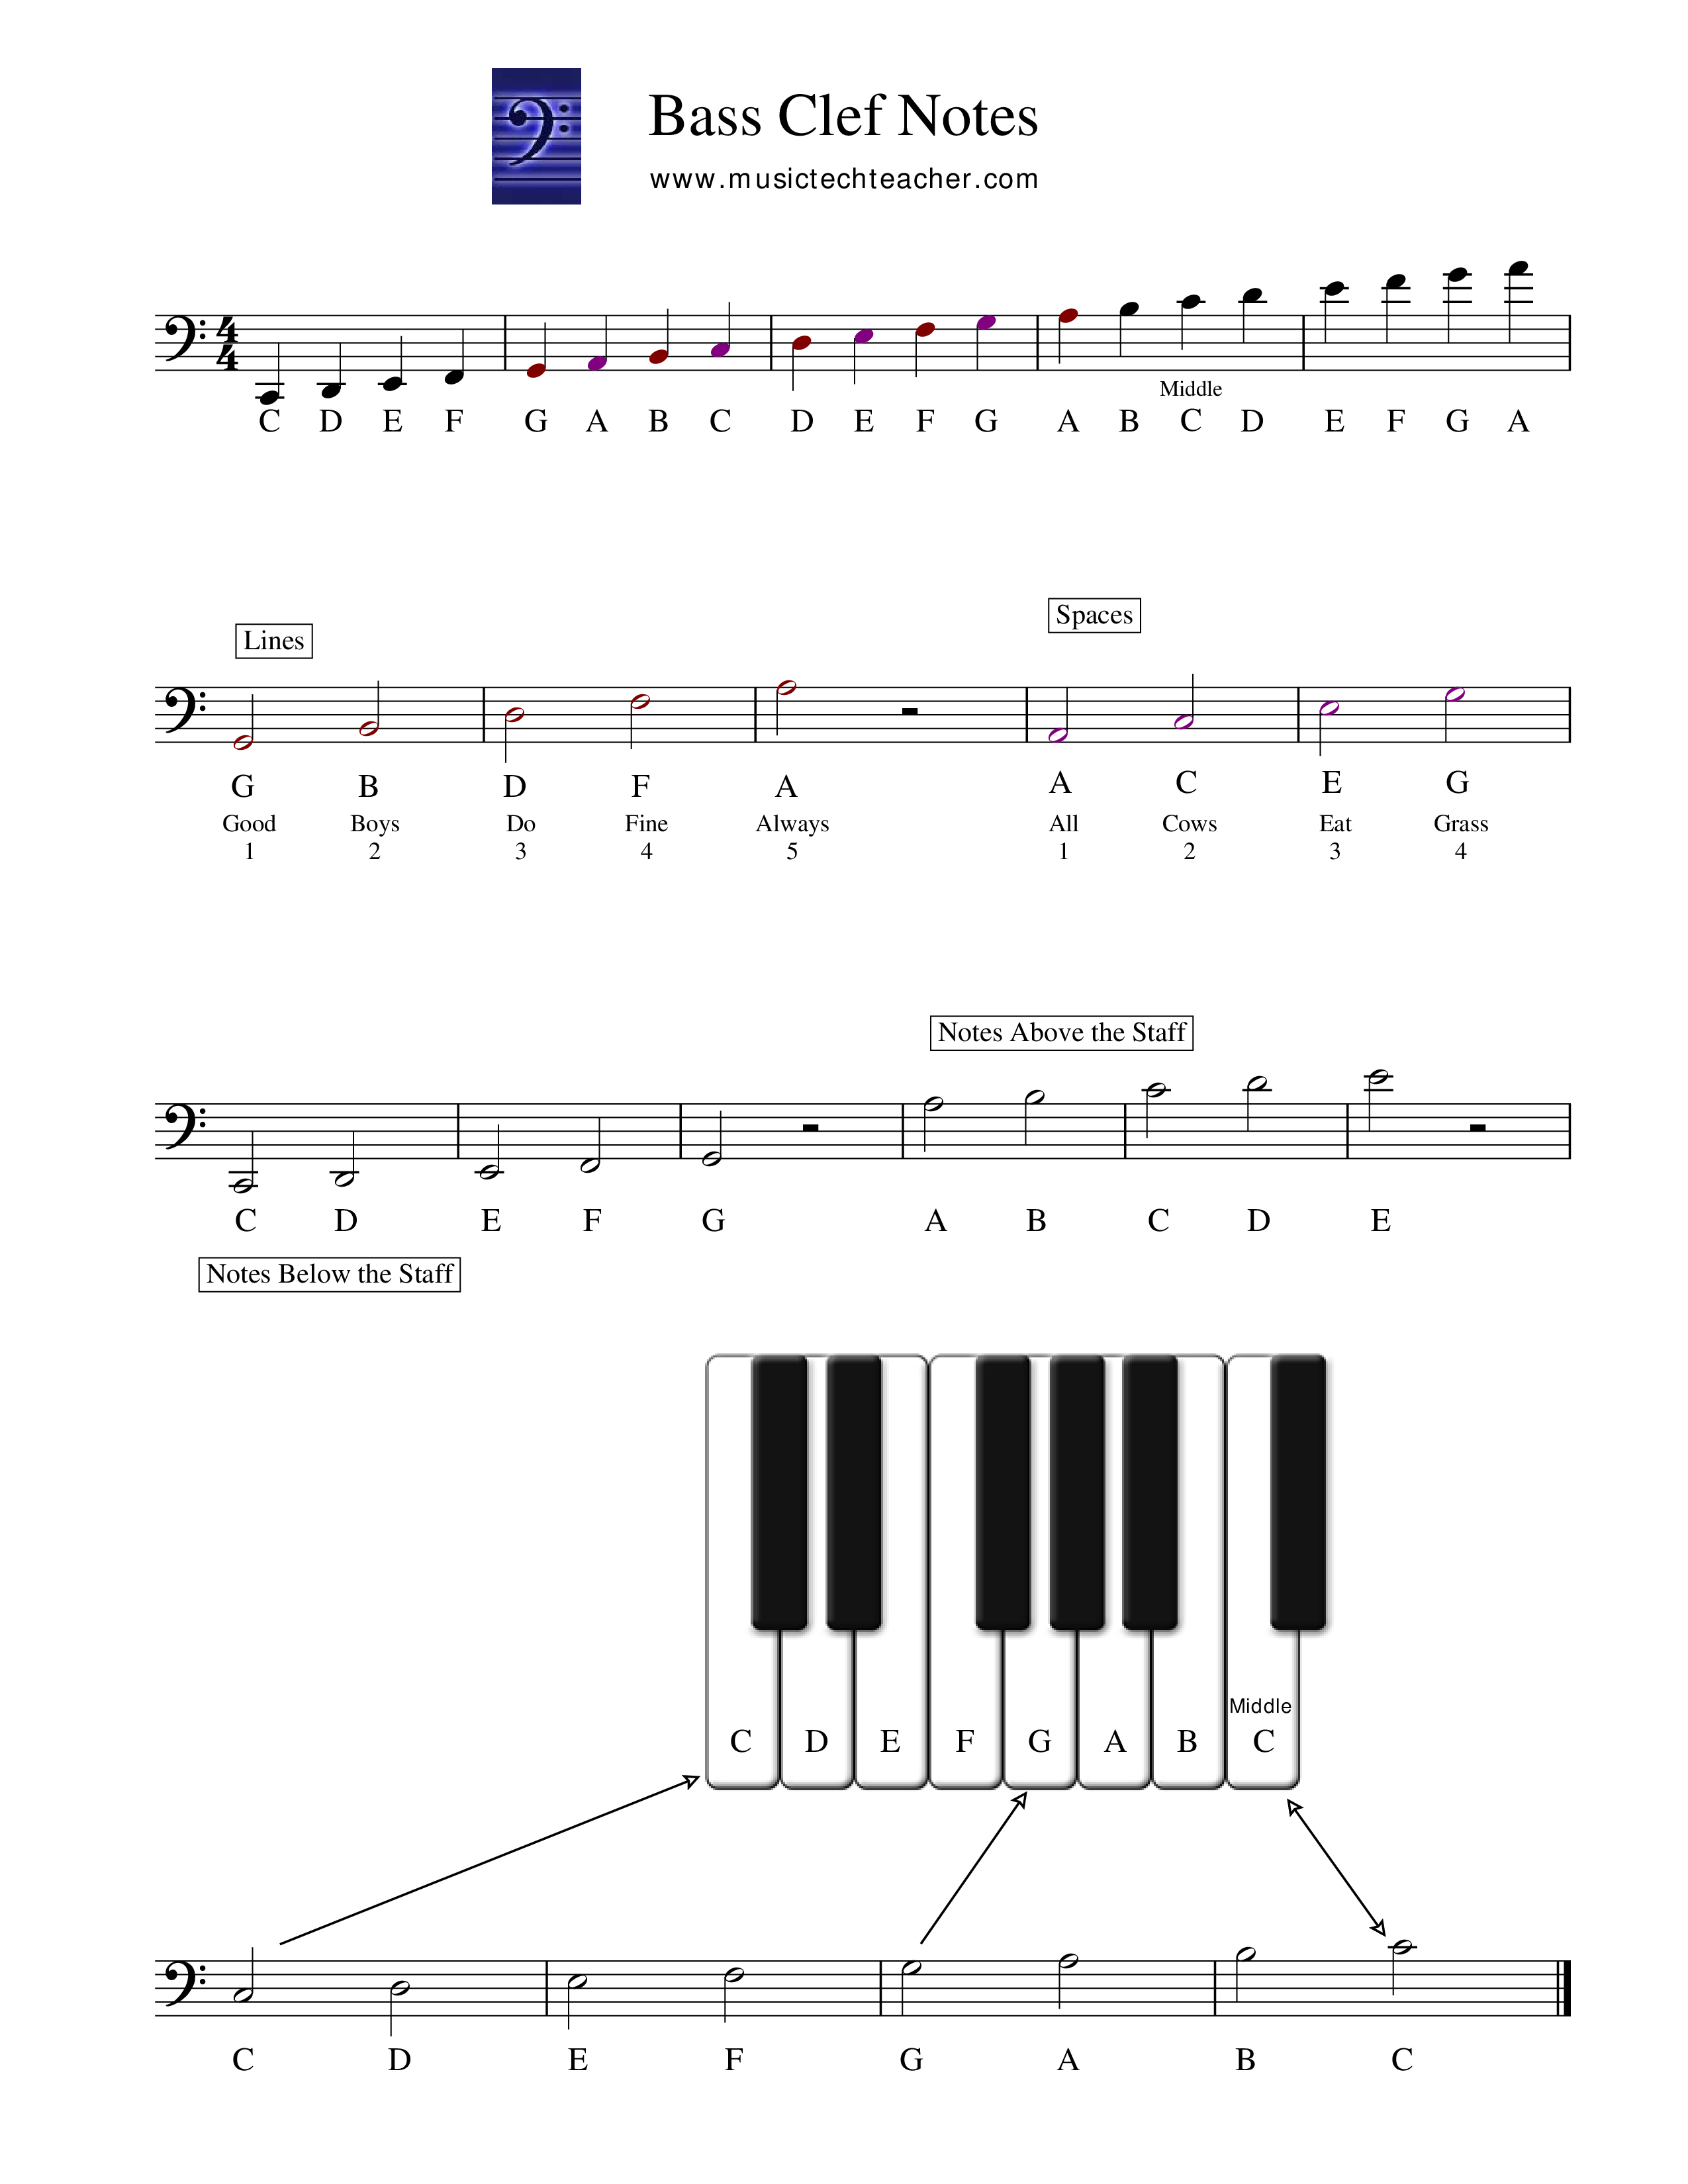 Piano Clef Chart